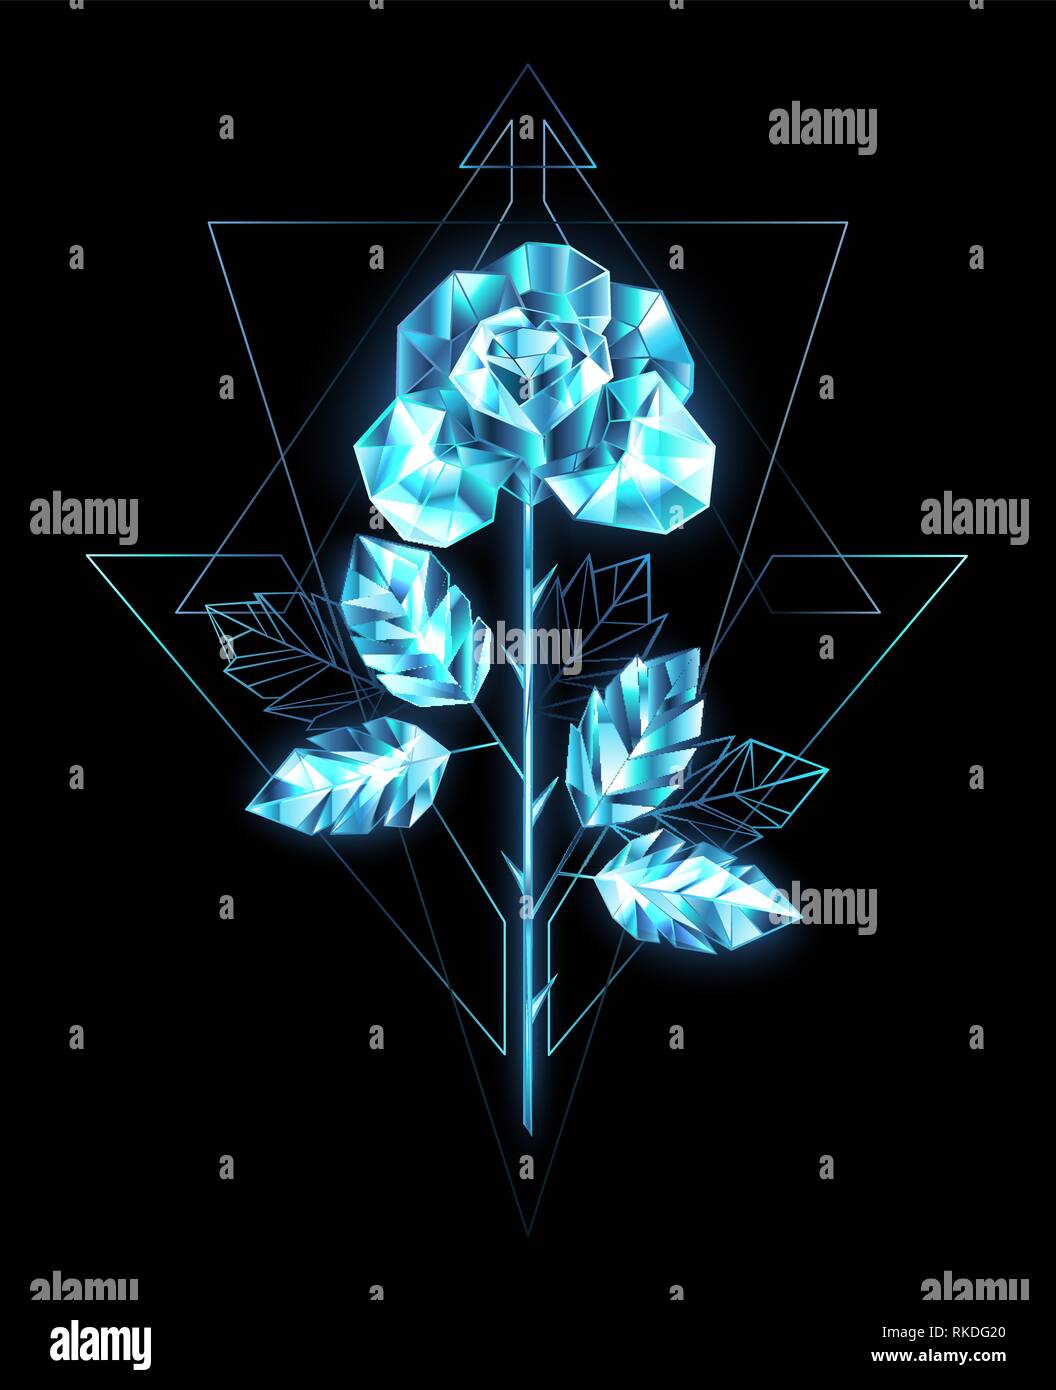 Polygonale, Sekt, kristalline Rose mit geradem Schaft blau, transparent Eis auf schwarzen Hintergrund. Stock Vektor